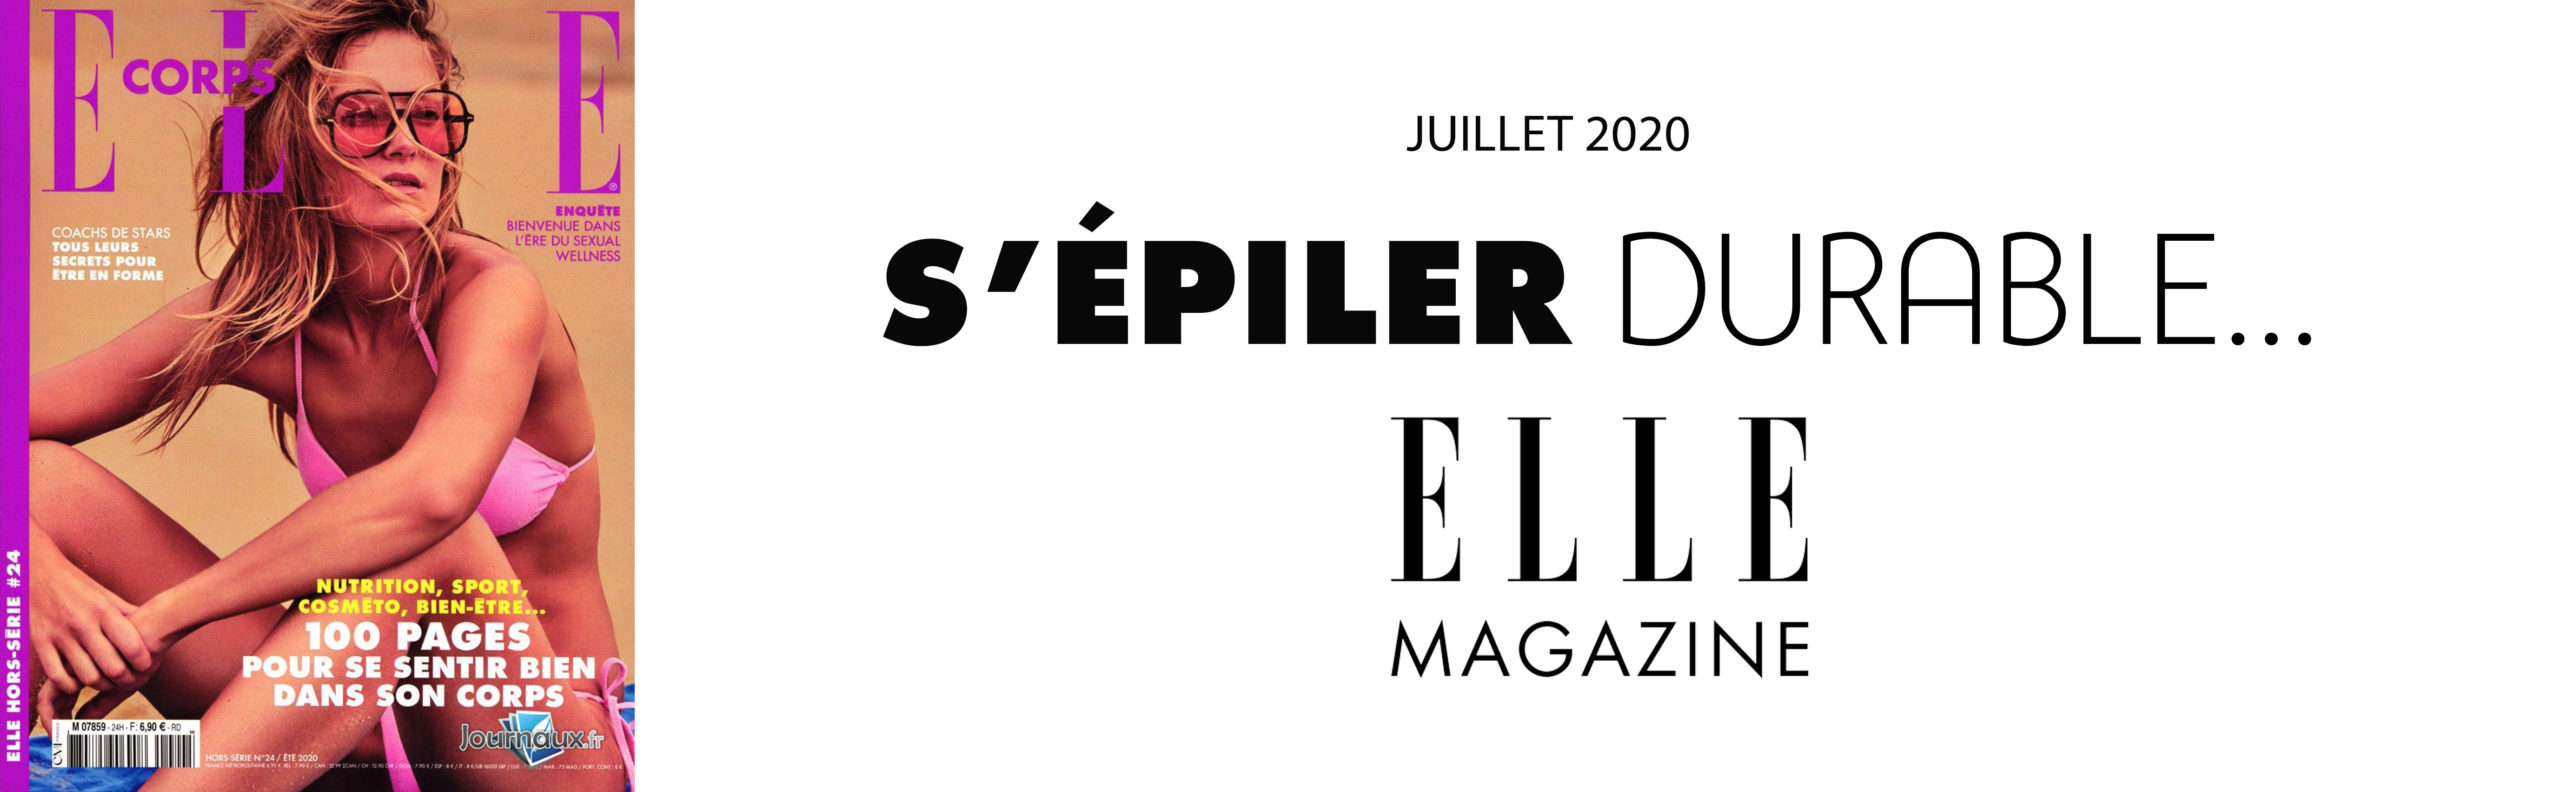 EPILODERM_ARTICLE_ELLE